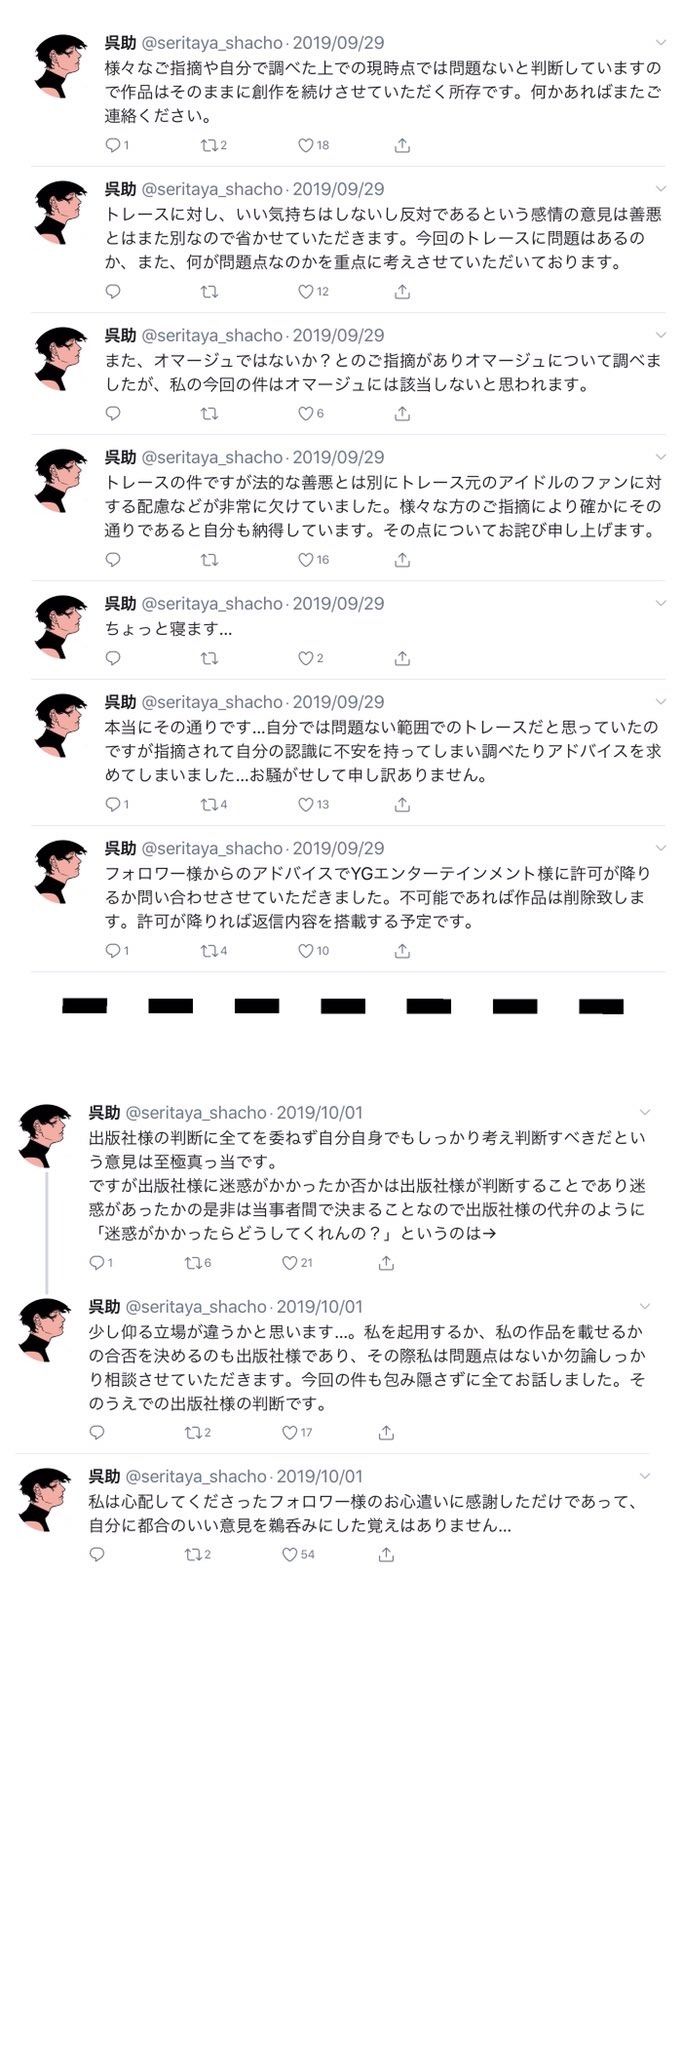 Gosuke Twitter Search Twitter